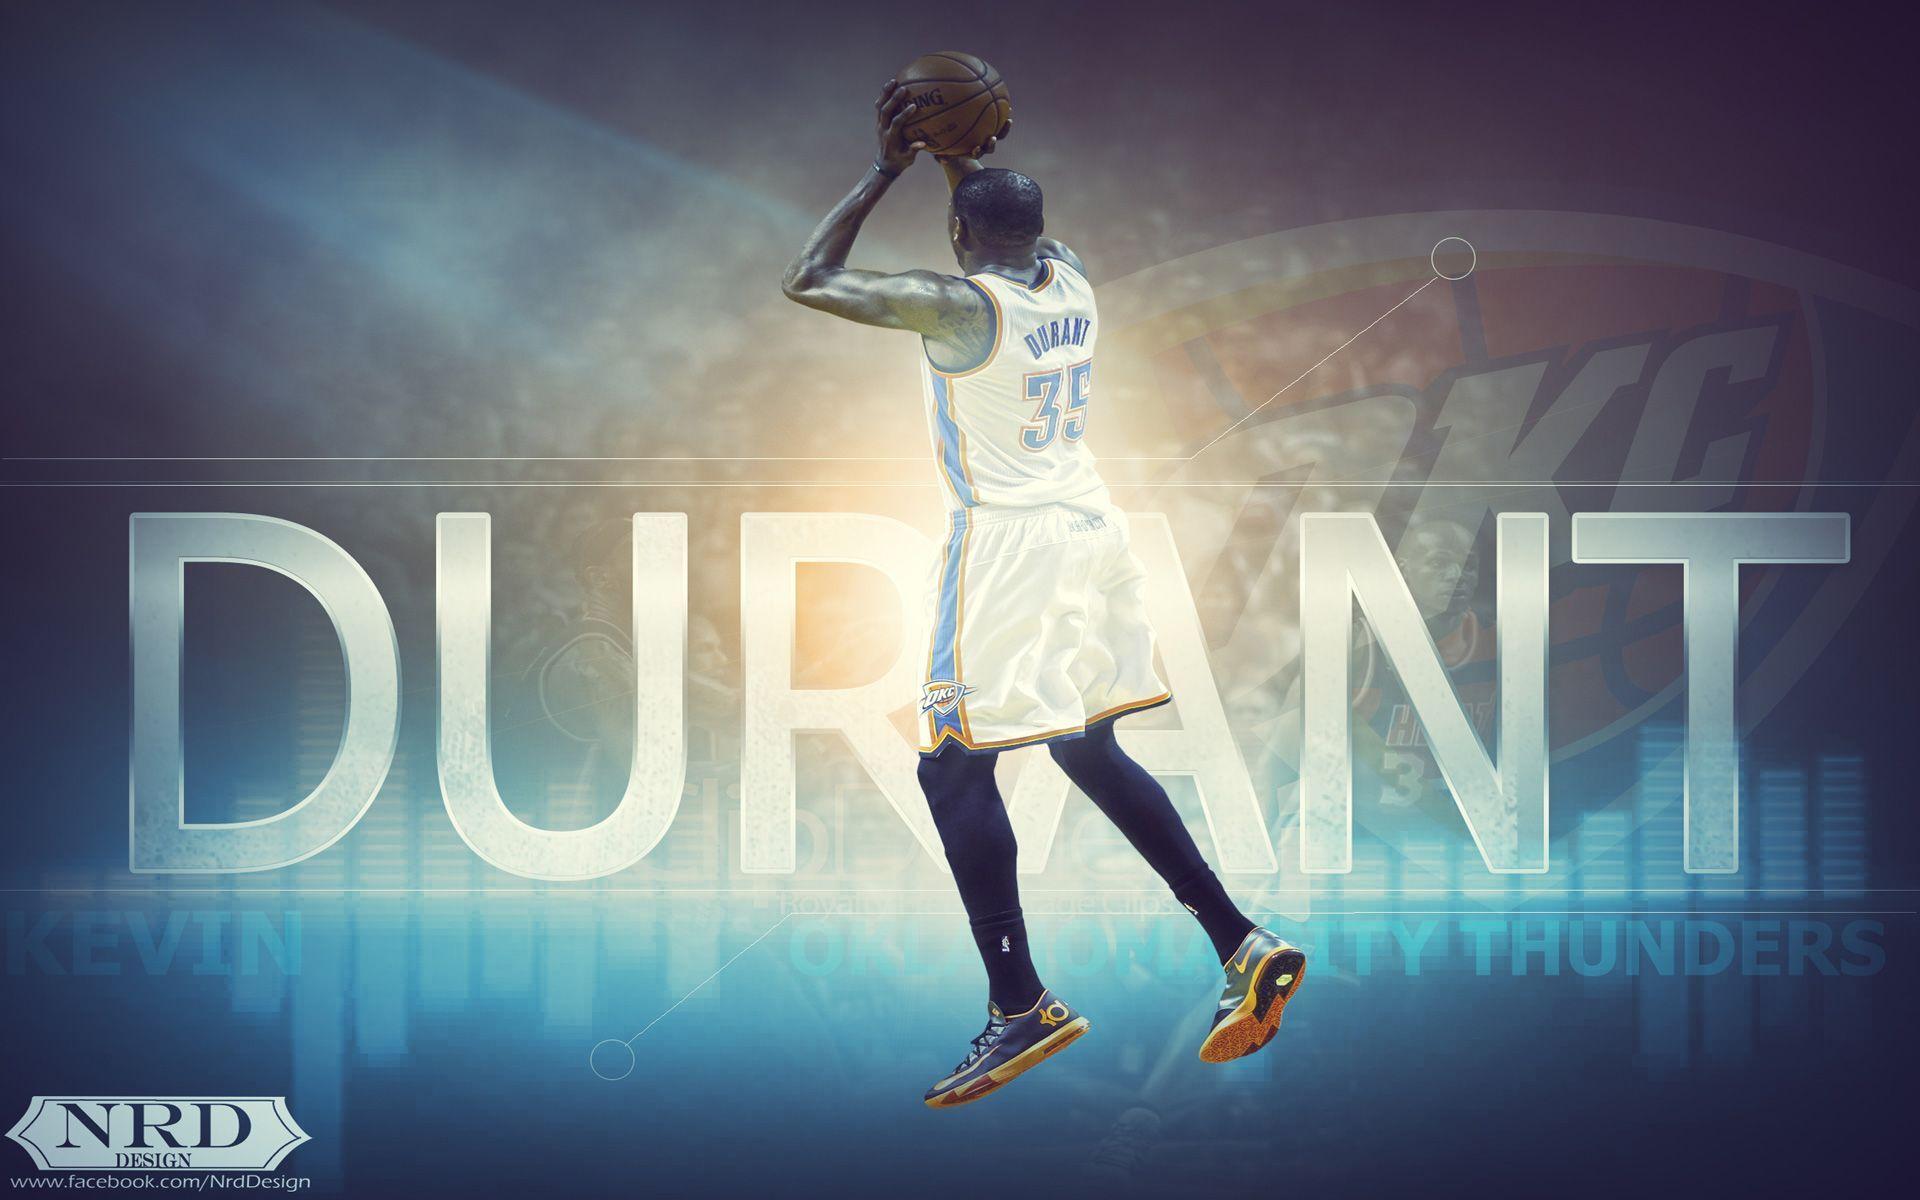 Kevin Durant Wallpaper. Basketball Wallpaper at